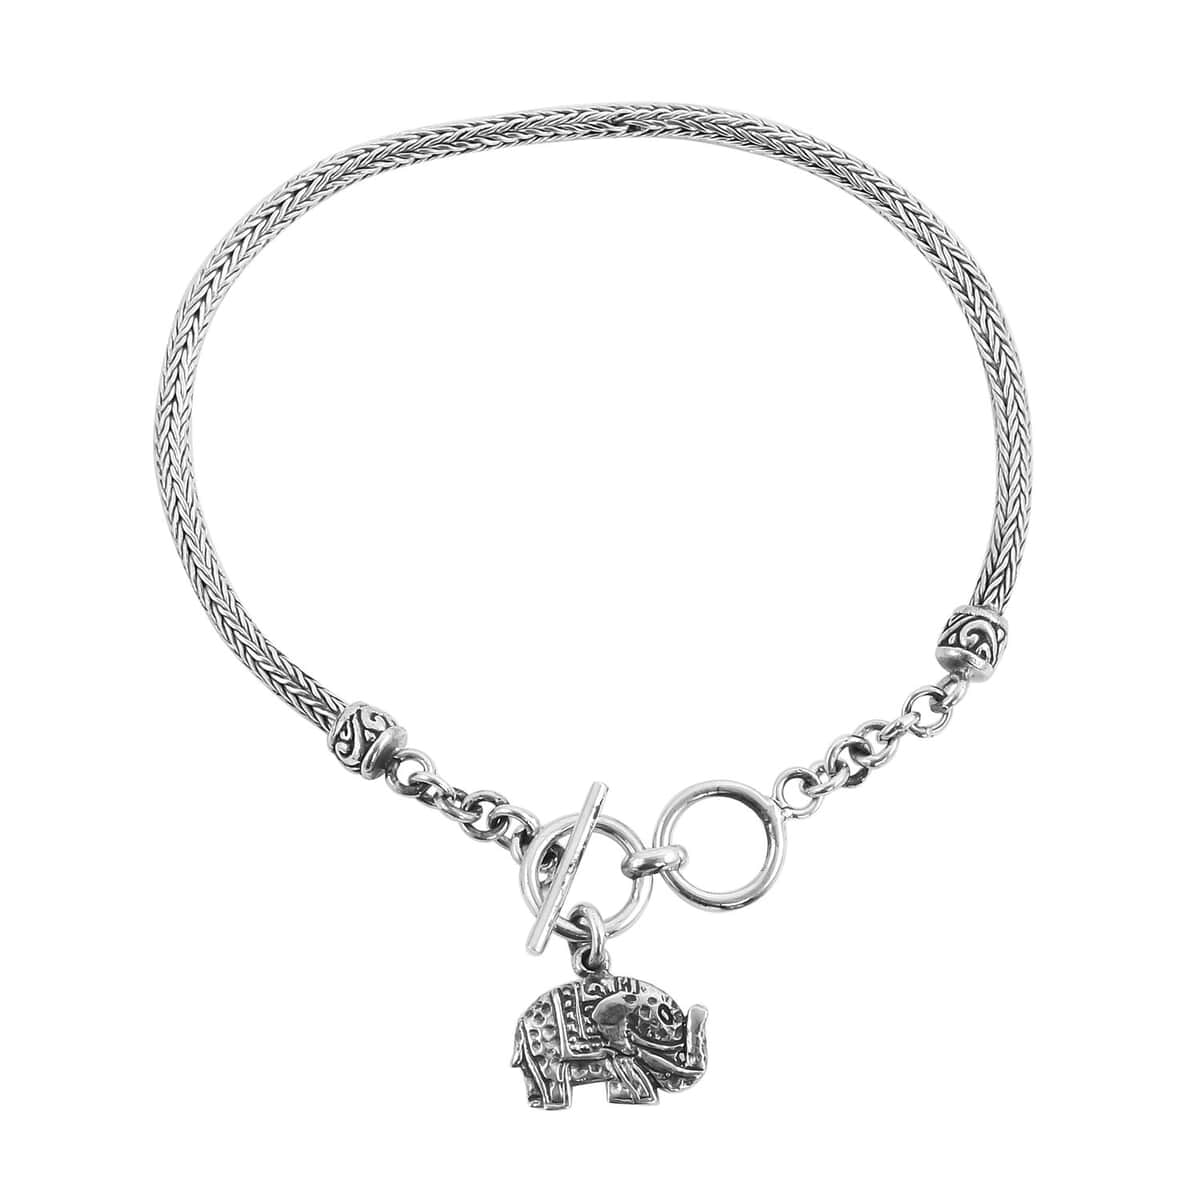 Bali Legacy Tulang Naga Bracelet, Sterling Silver Bracelet, Elephant Charm Bracelet (7.50 In) 8.20 Grams image number 0